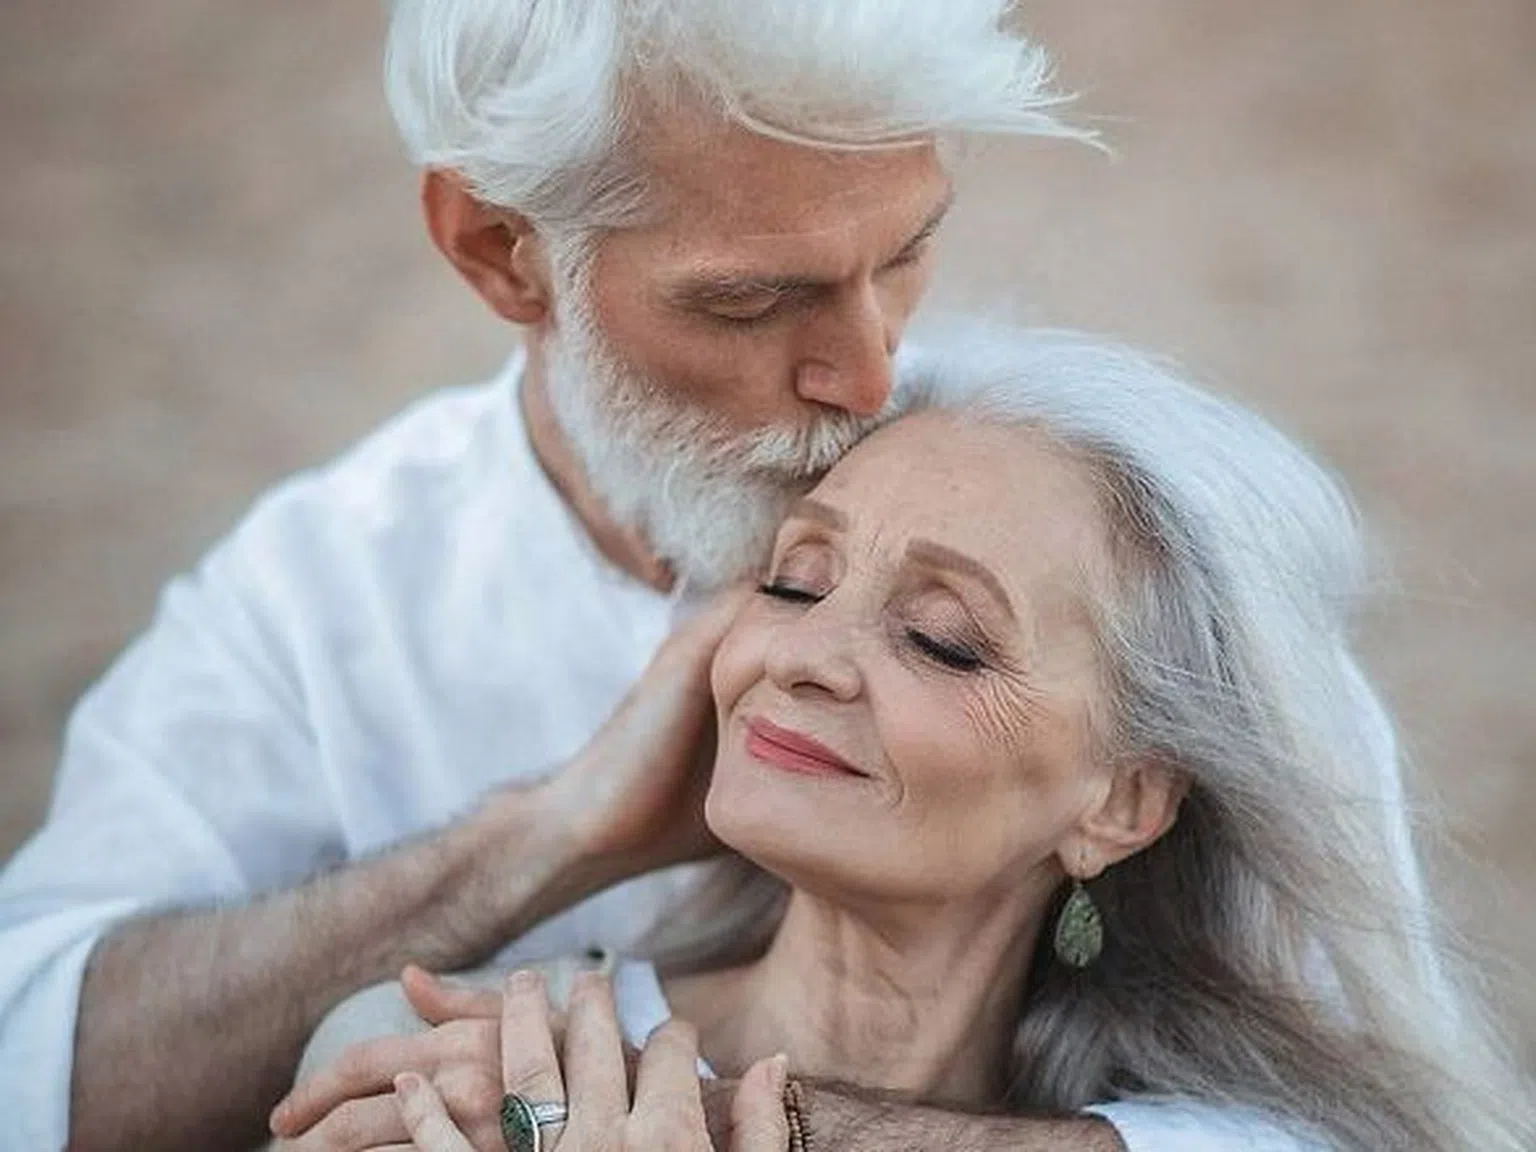 Модели между 45 и 85 години, които доказват, че красотата няма възраст